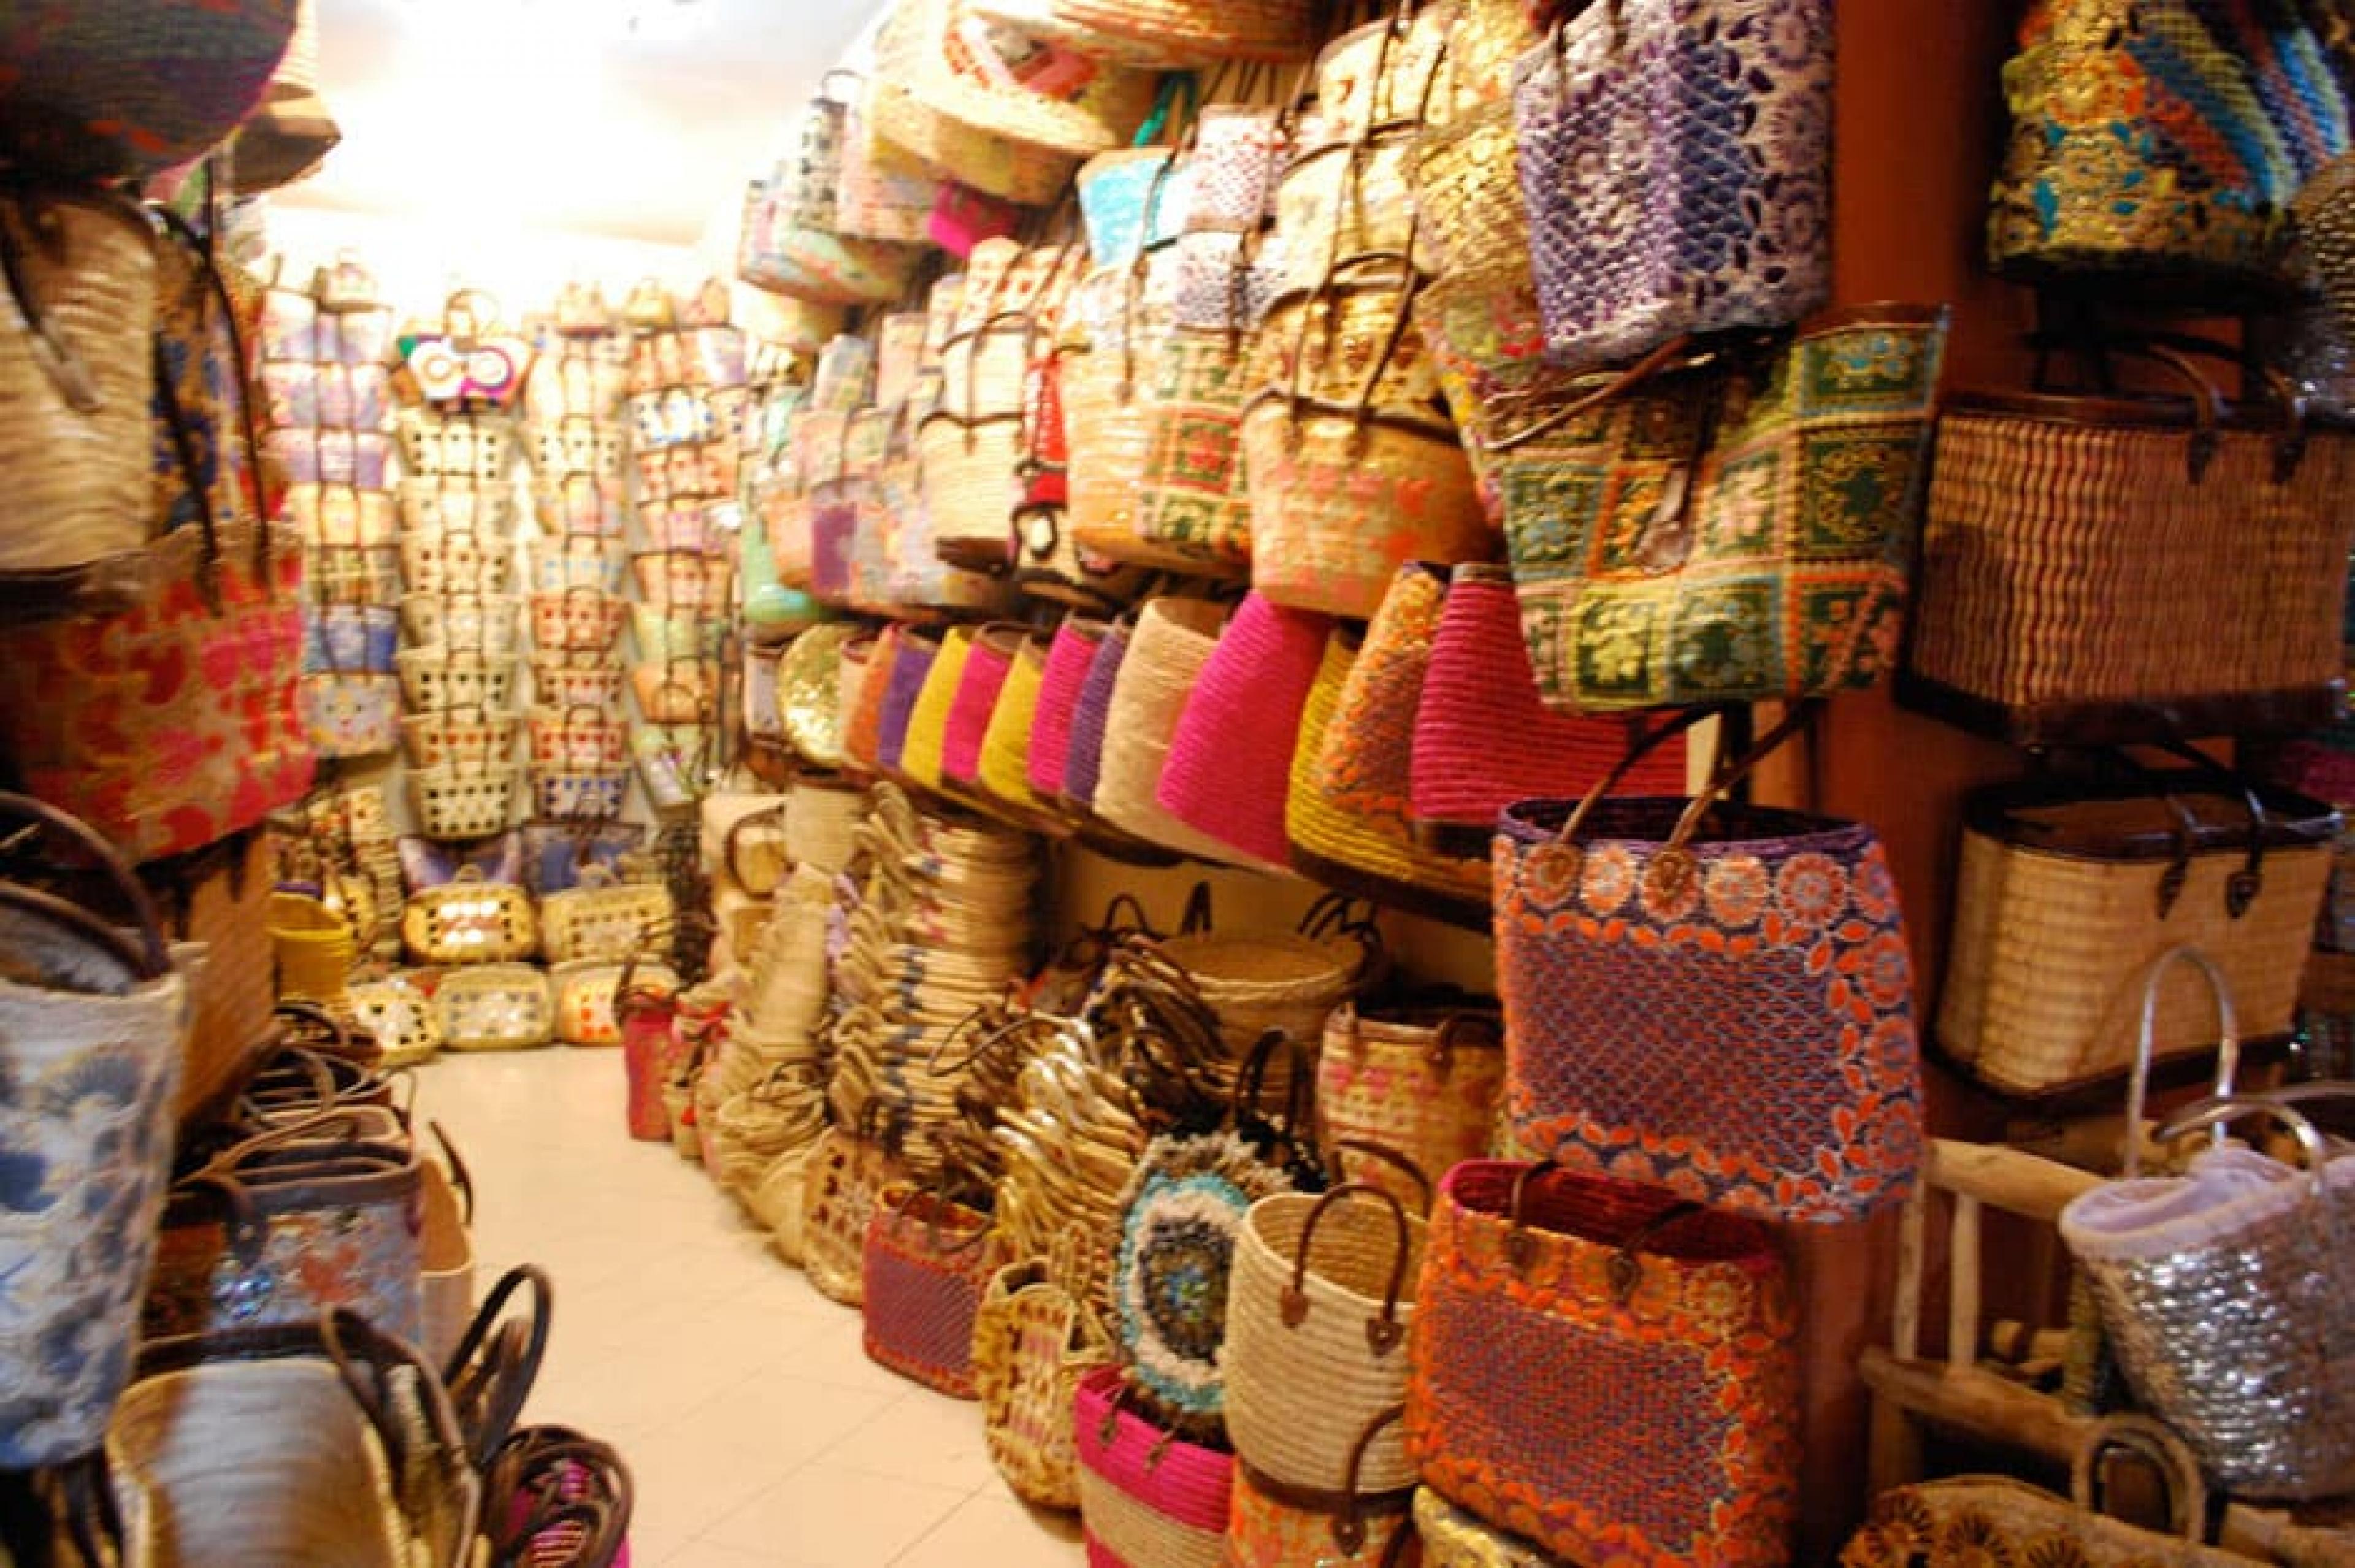 Enterior View-Shop the Souk, Marrakech, Morocco